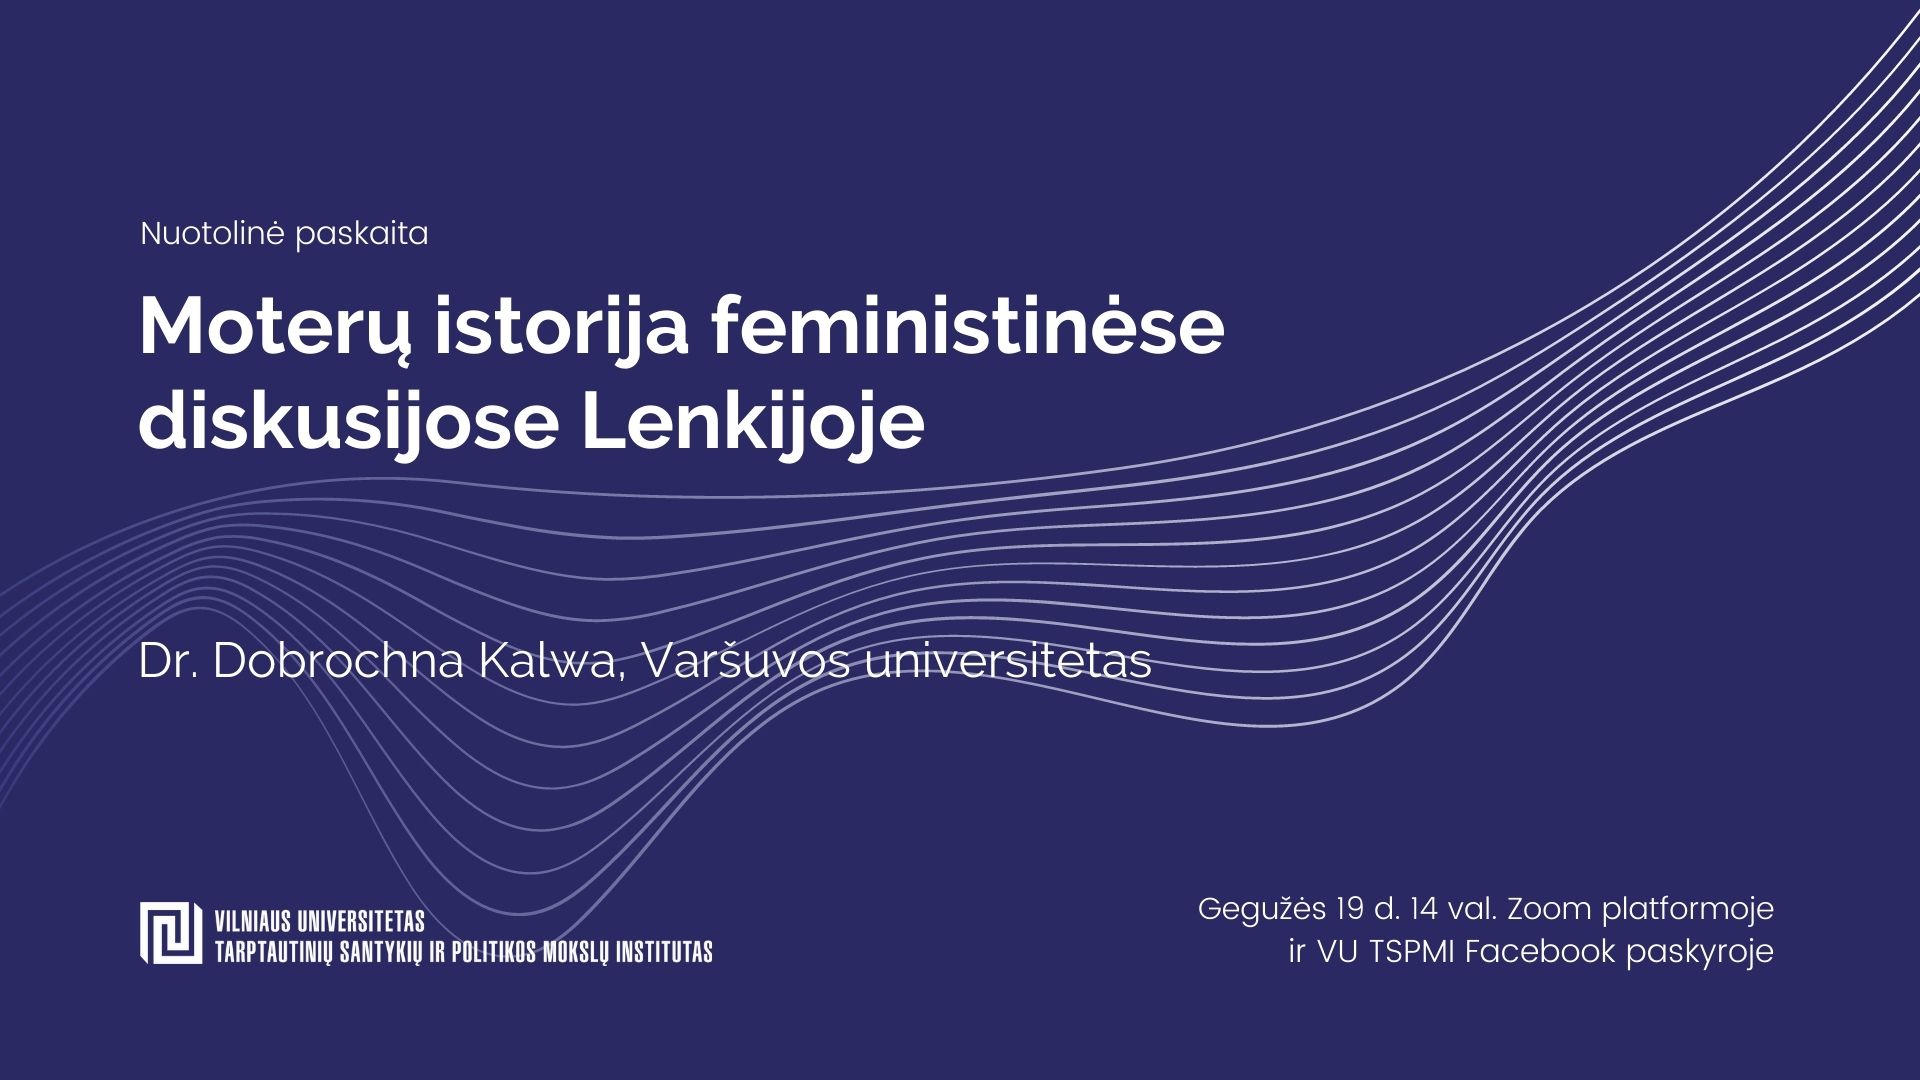 Moterų istorija feministinėse diskusijose Lenkijoje